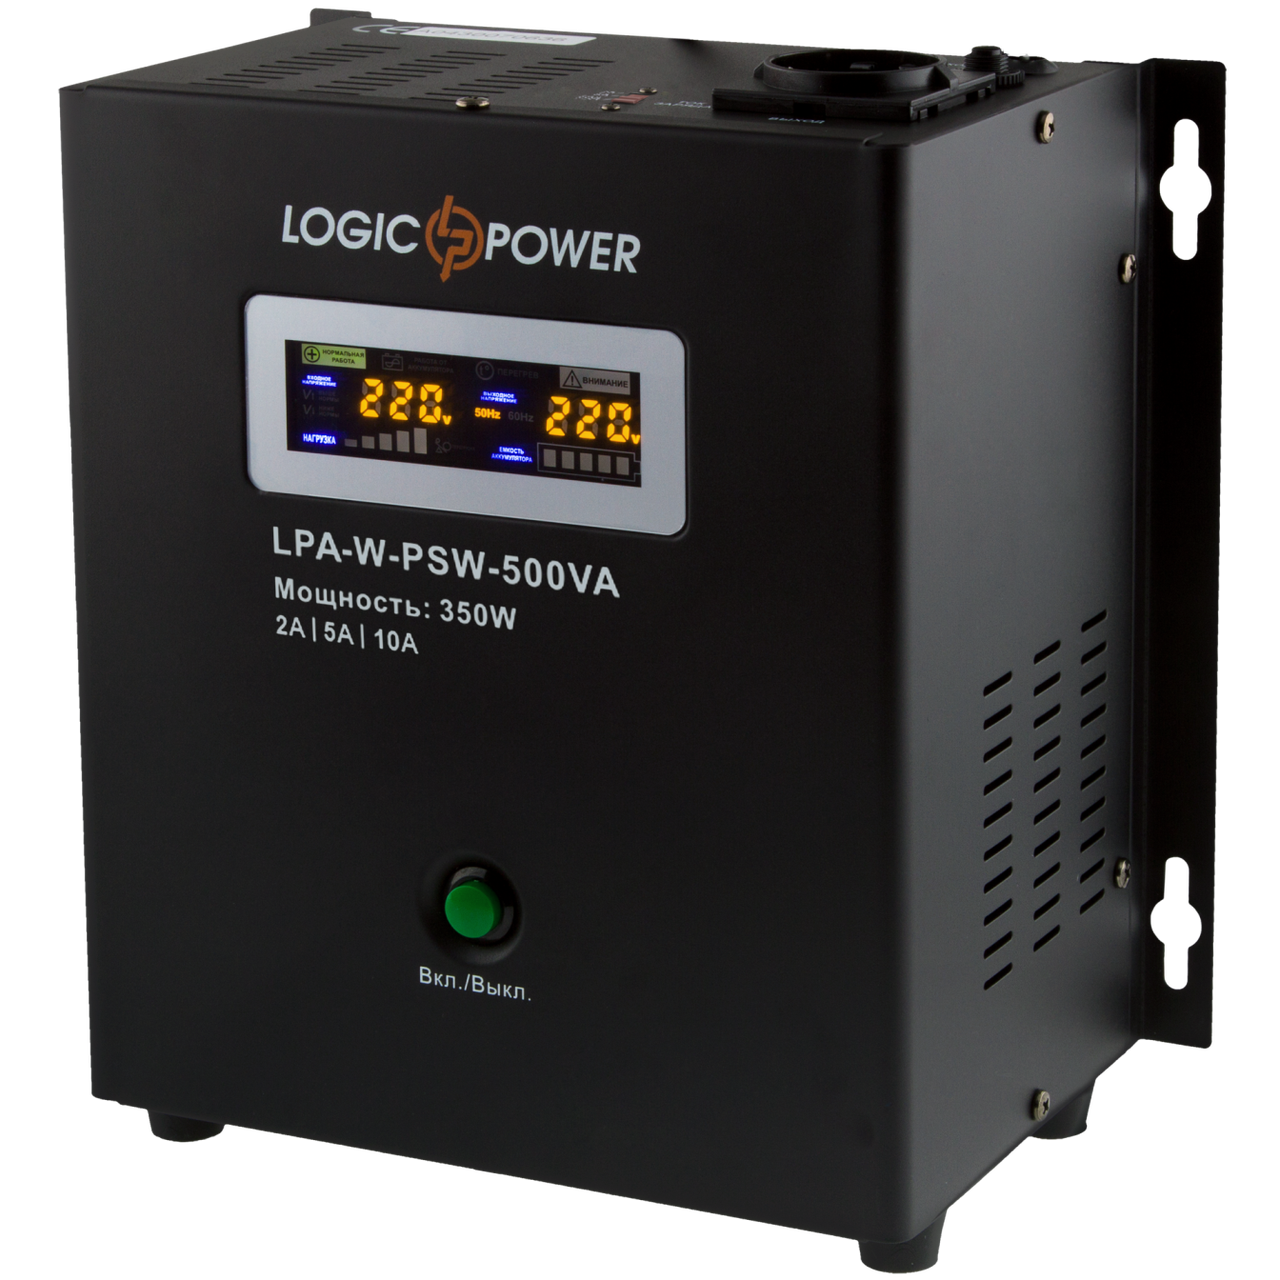 ИБП LogicPower LPA-W-PSW-500VA (350Вт) 2A/5A/10A 12В с правильной синусоидой